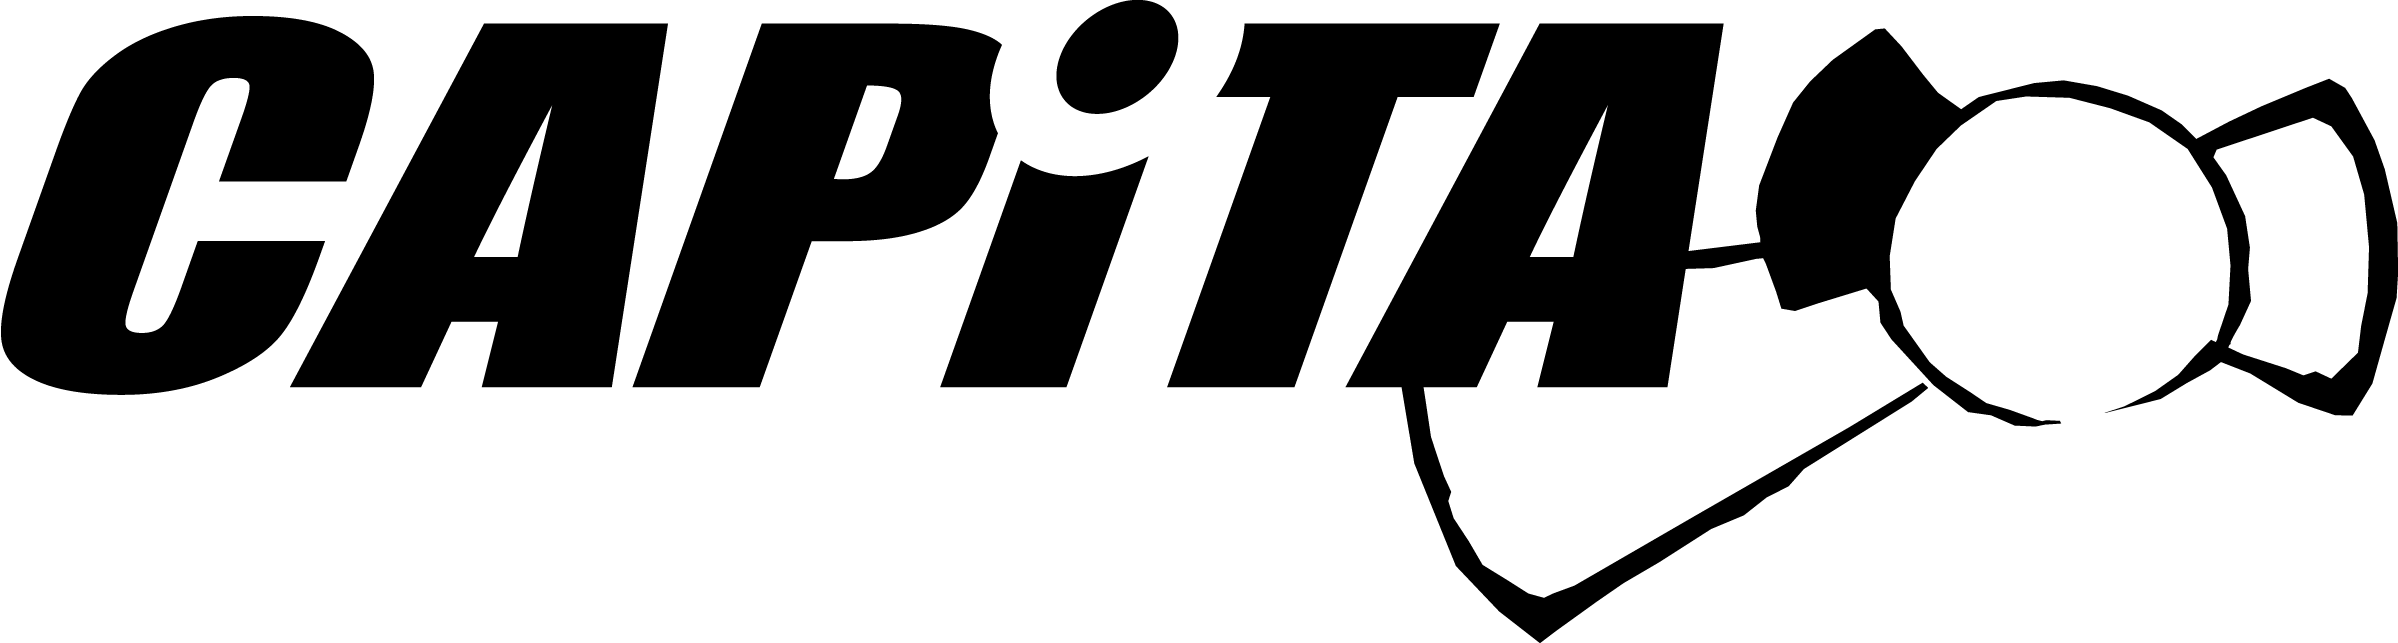 Capita Logo And Metaphor